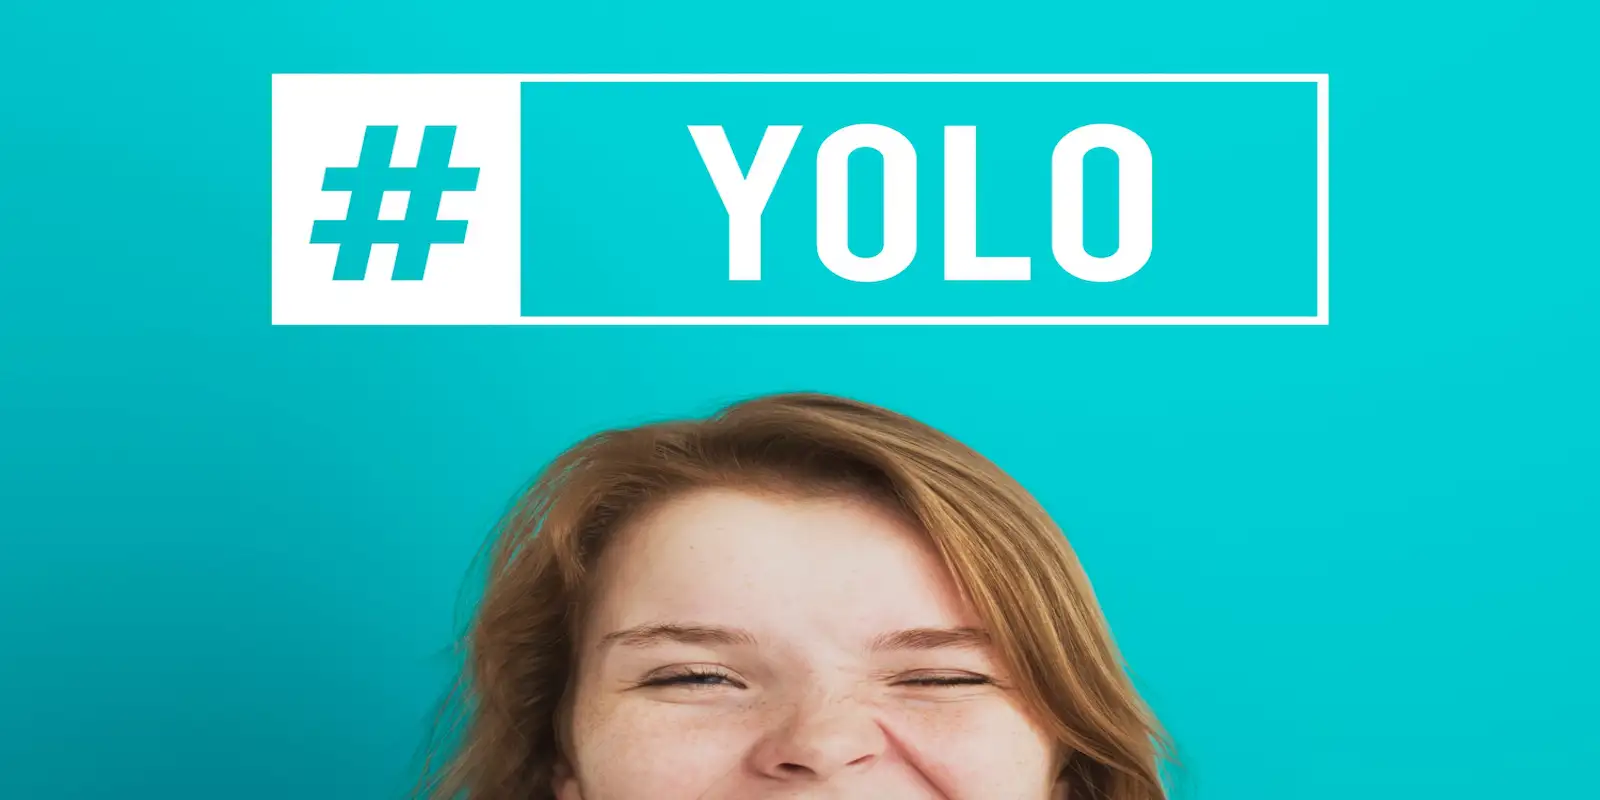 une image montrant une femme avec le hashtag yolo au dessus